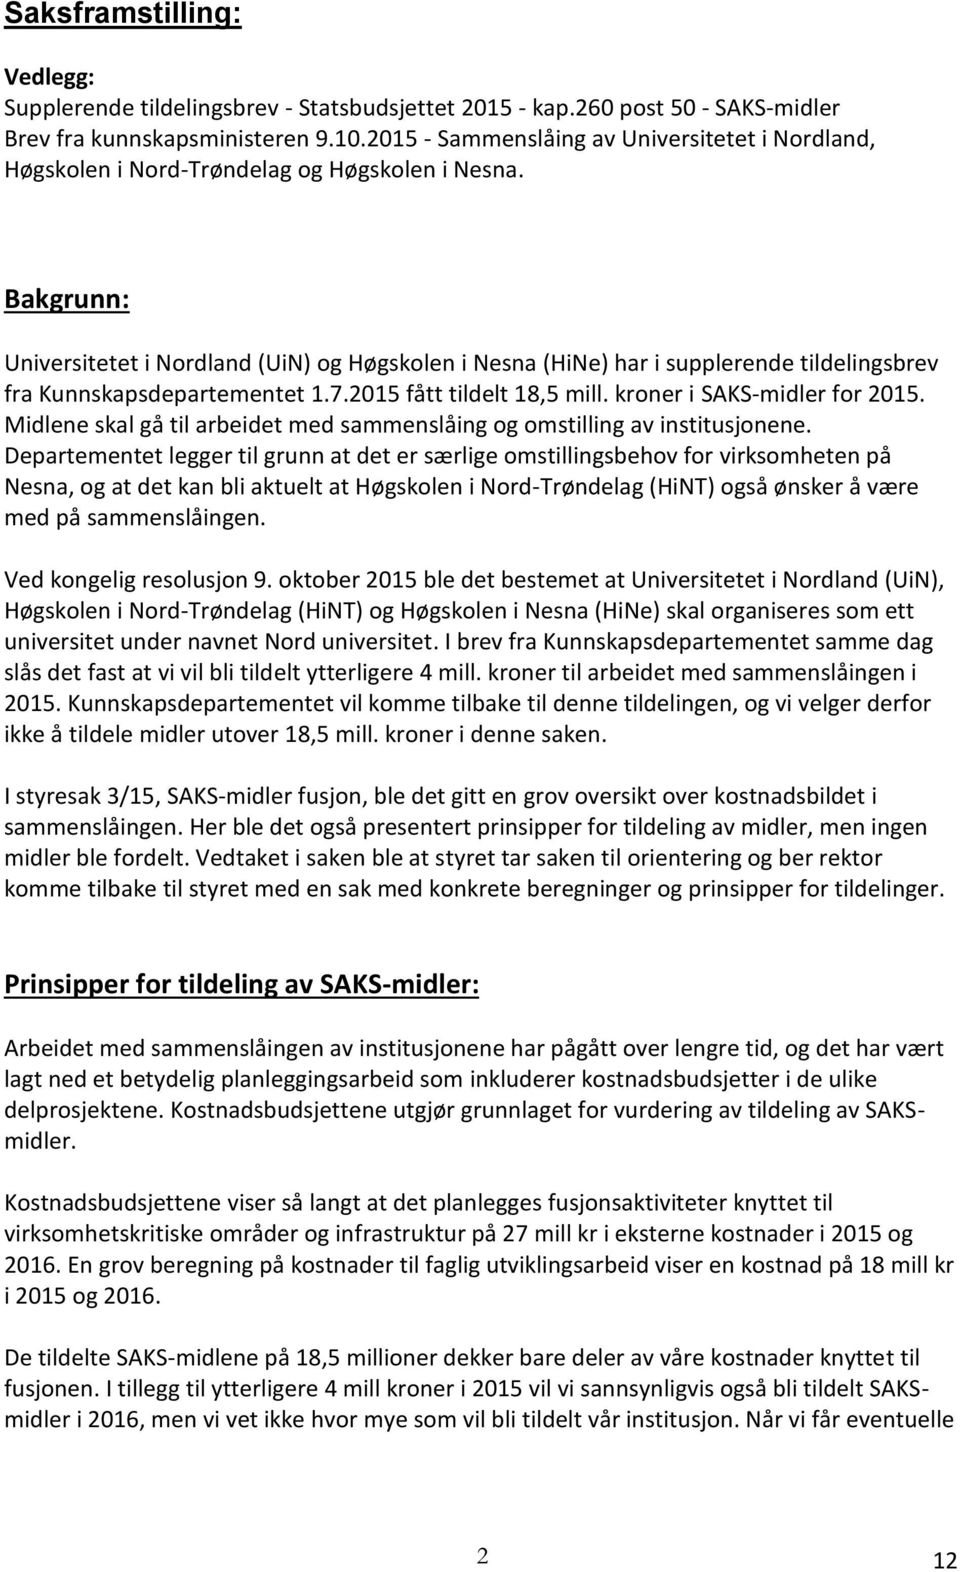 Bakgrunn: Universitetet i Nordland (UiN) og Høgskolen i Nesna (HiNe) har i supplerende tildelingsbrev fra Kunnskapsdepartementet 1.7.2015 fått tildelt 18,5 mill. kroner i SAKS-midler for 2015.